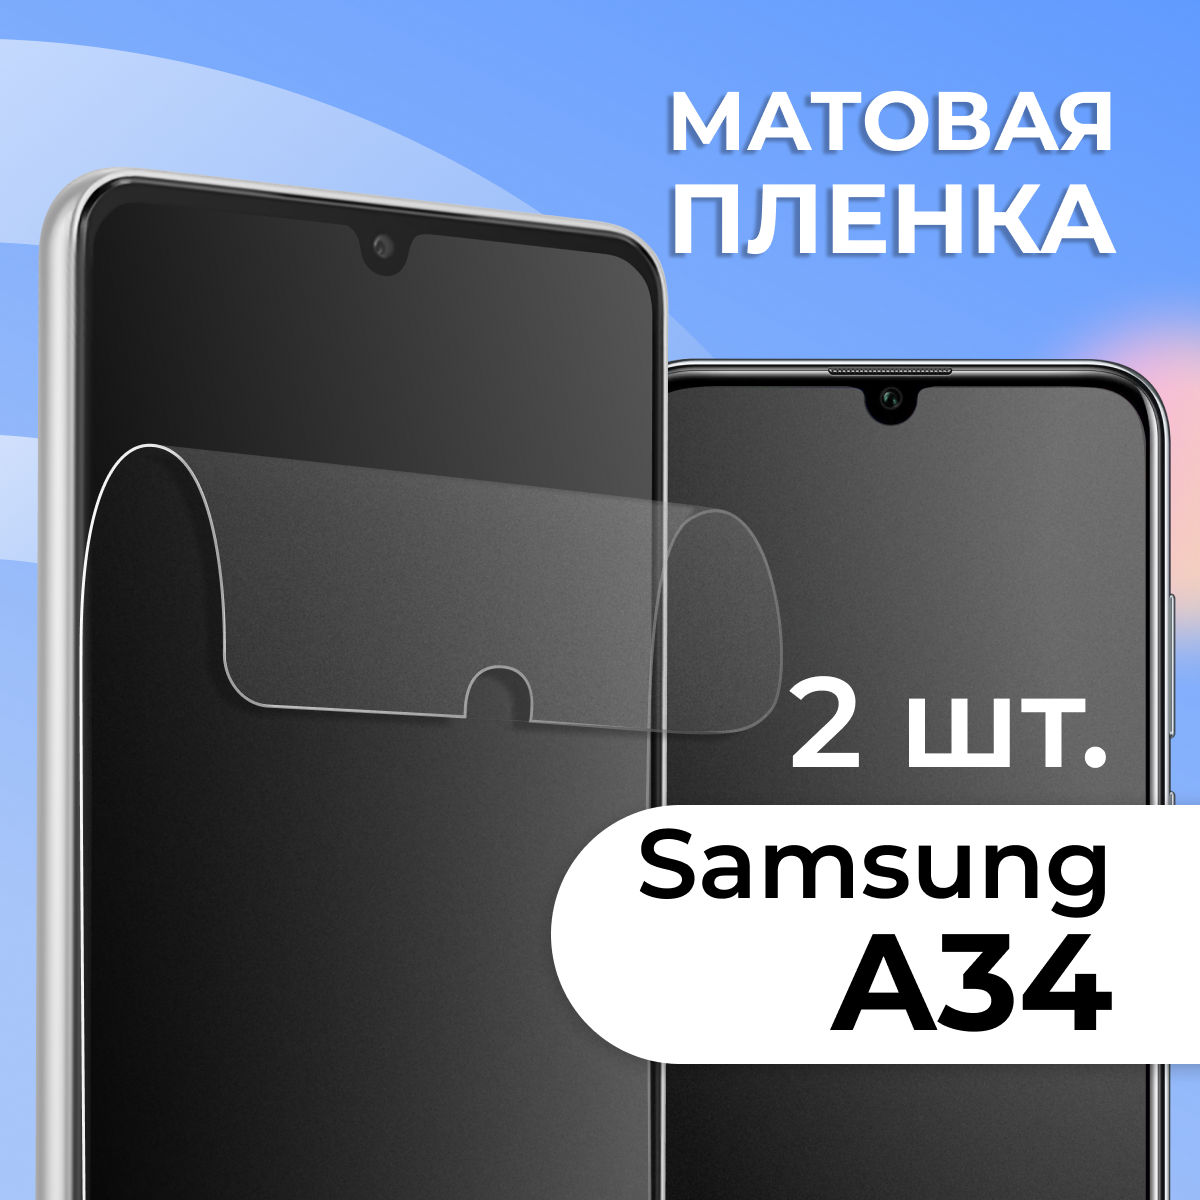 Комплект 2 шт. Матовая защитная пленка для смартфона Samsung Galaxy A34 / Противоударная гидрогелевая пленка с матовым покрытием на телефон Самсунг Галакси А34